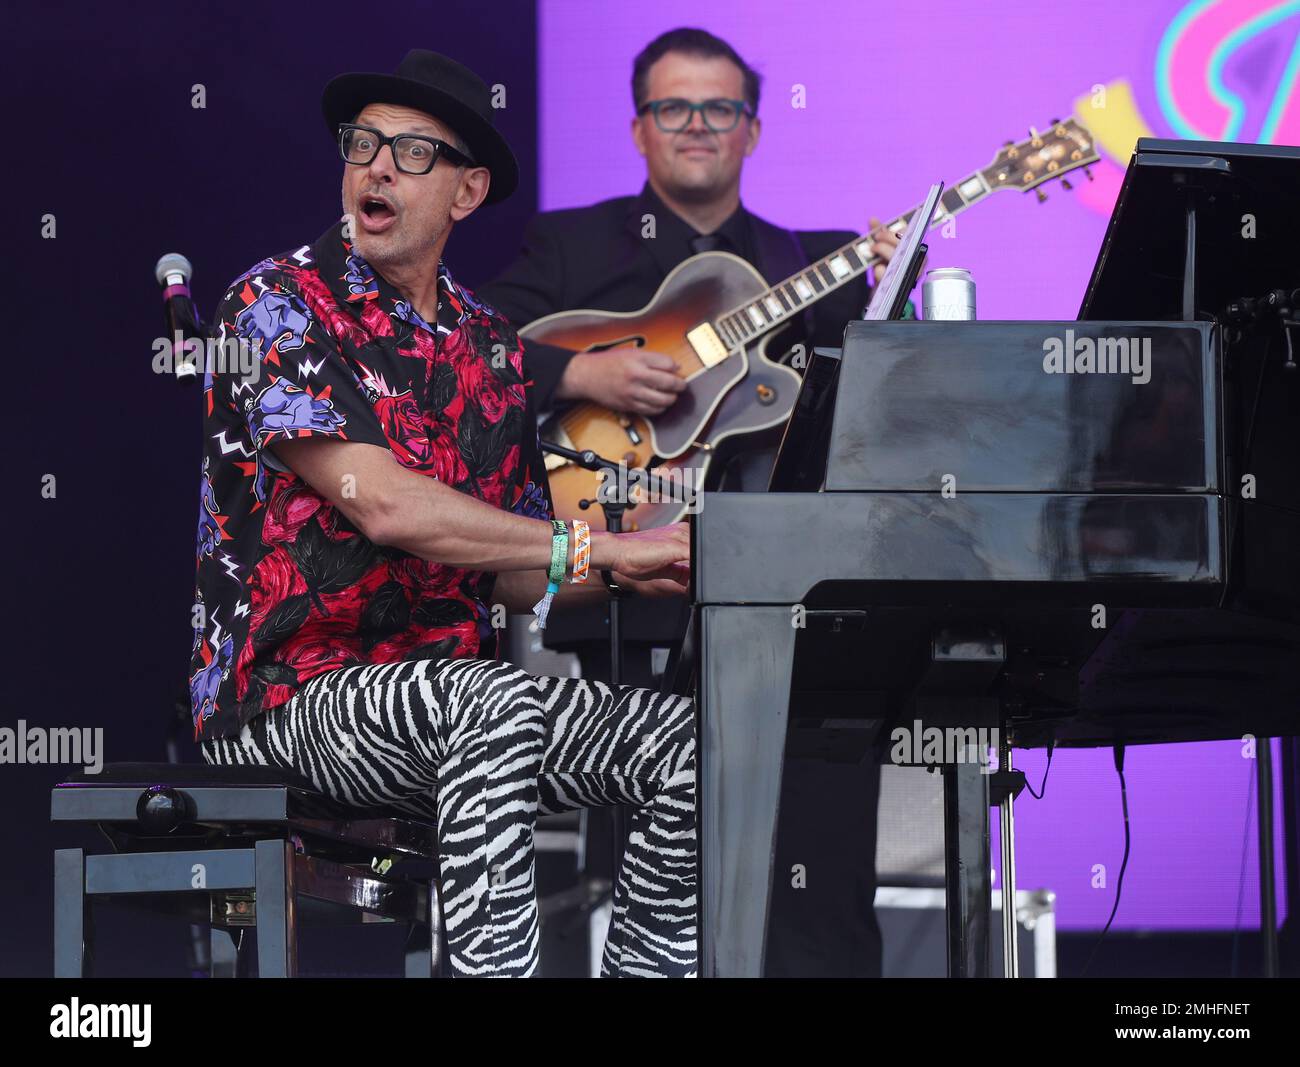 Filmfoto vom 30. Oktober 06/19 von Jeff Goldblum (links) und dem Mildred Snitzer Orchestra, die beim Glastonbury Festival auftreten, während der Hollywood-Star mit einer Reihe von Sängern zusammengearbeitet hat, darunter Kelly Clarkson für seine neueste Musical-Veröffentlichung. Stockfoto